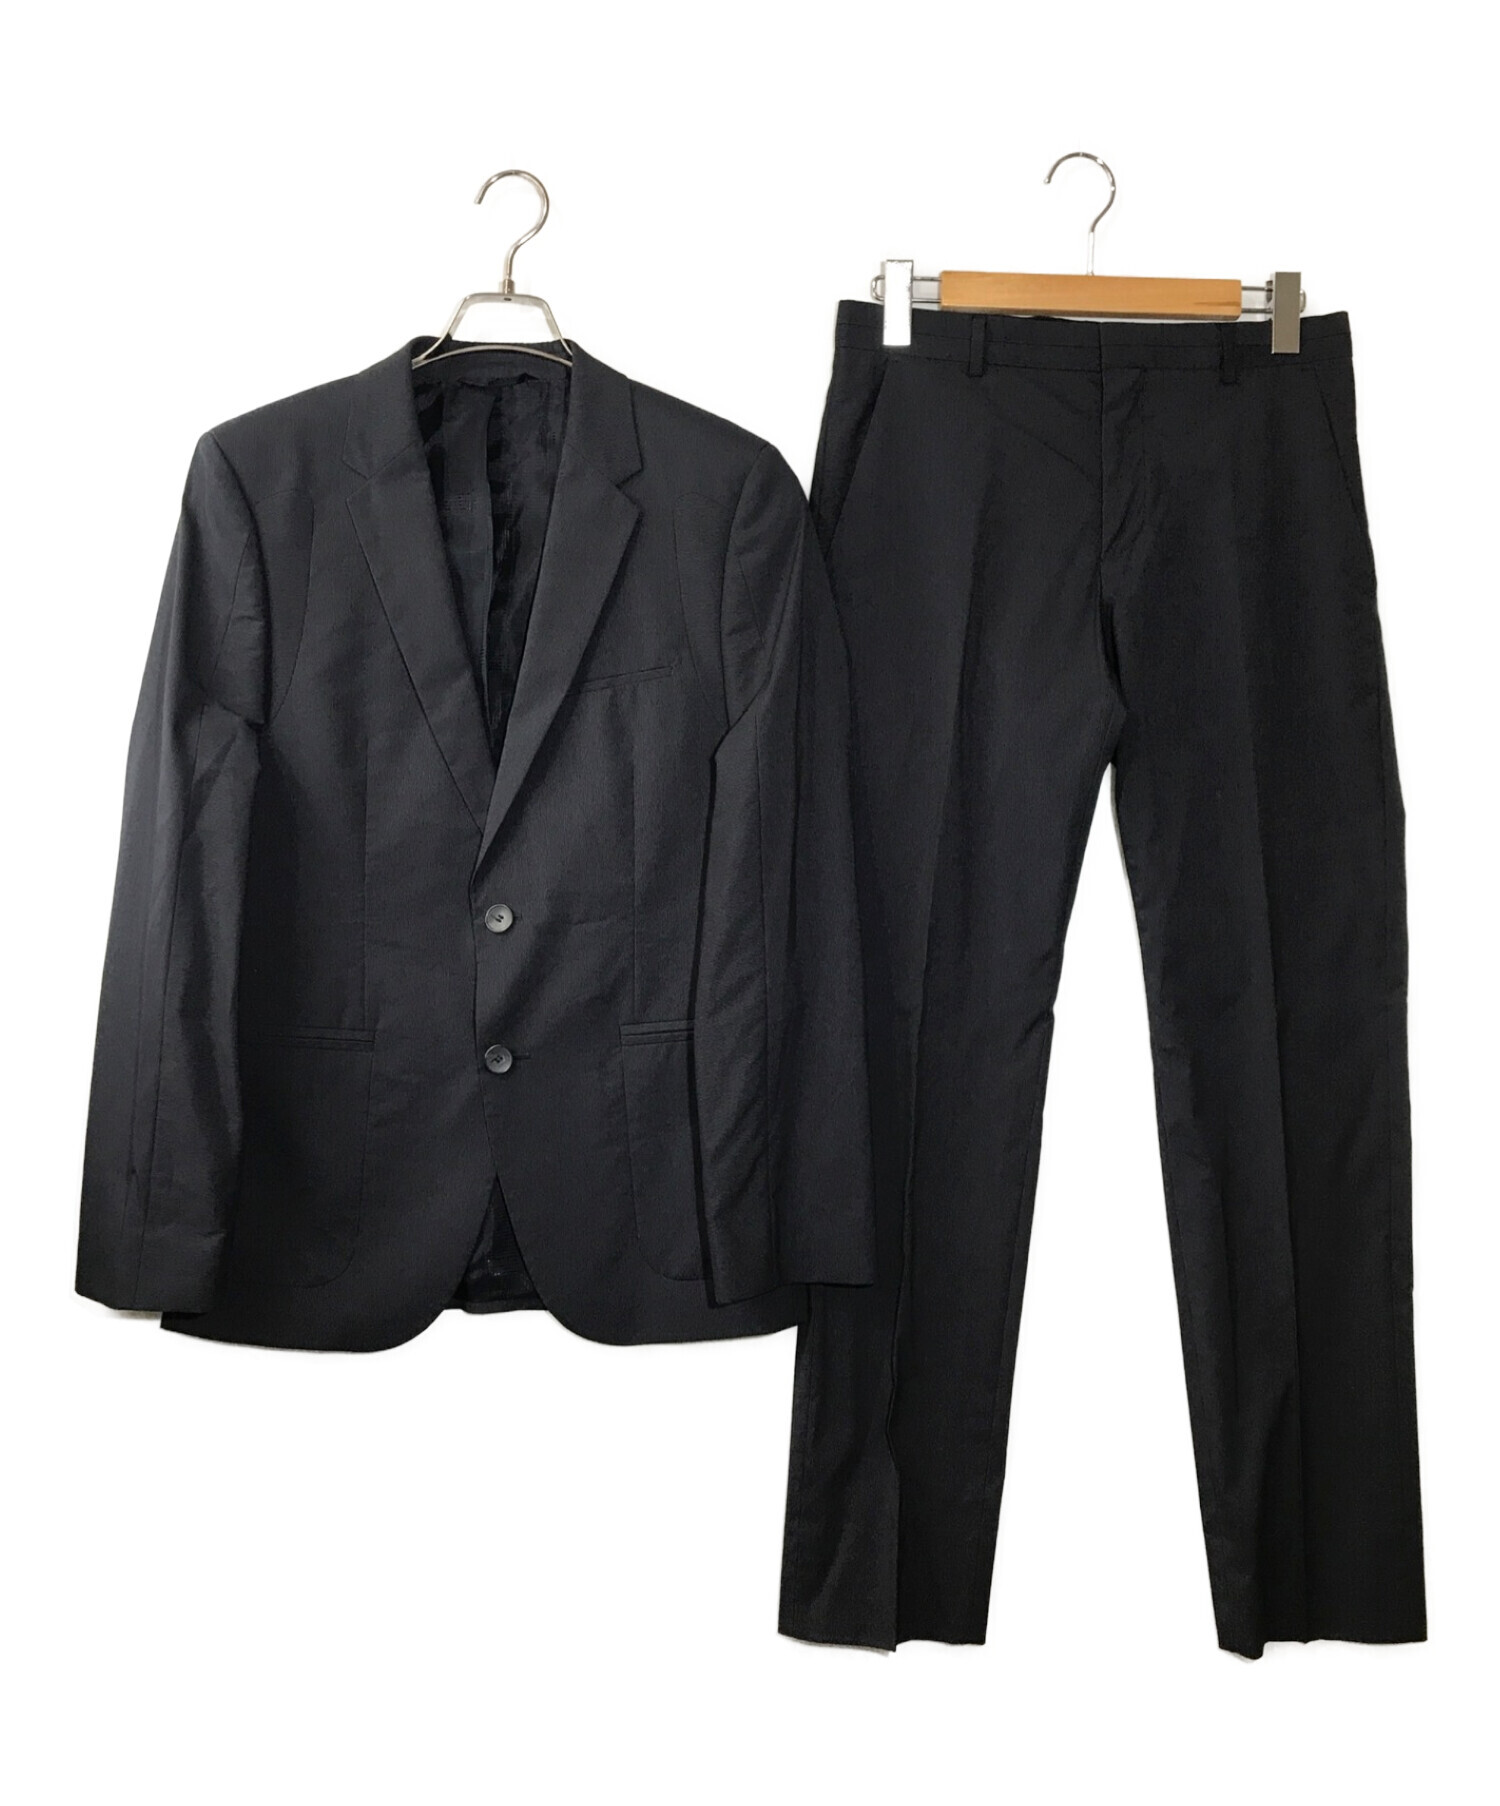 ヒューゴボス 黒 スーツ ジャケット パンツ セットアップ32サイズ(XS)通勤服